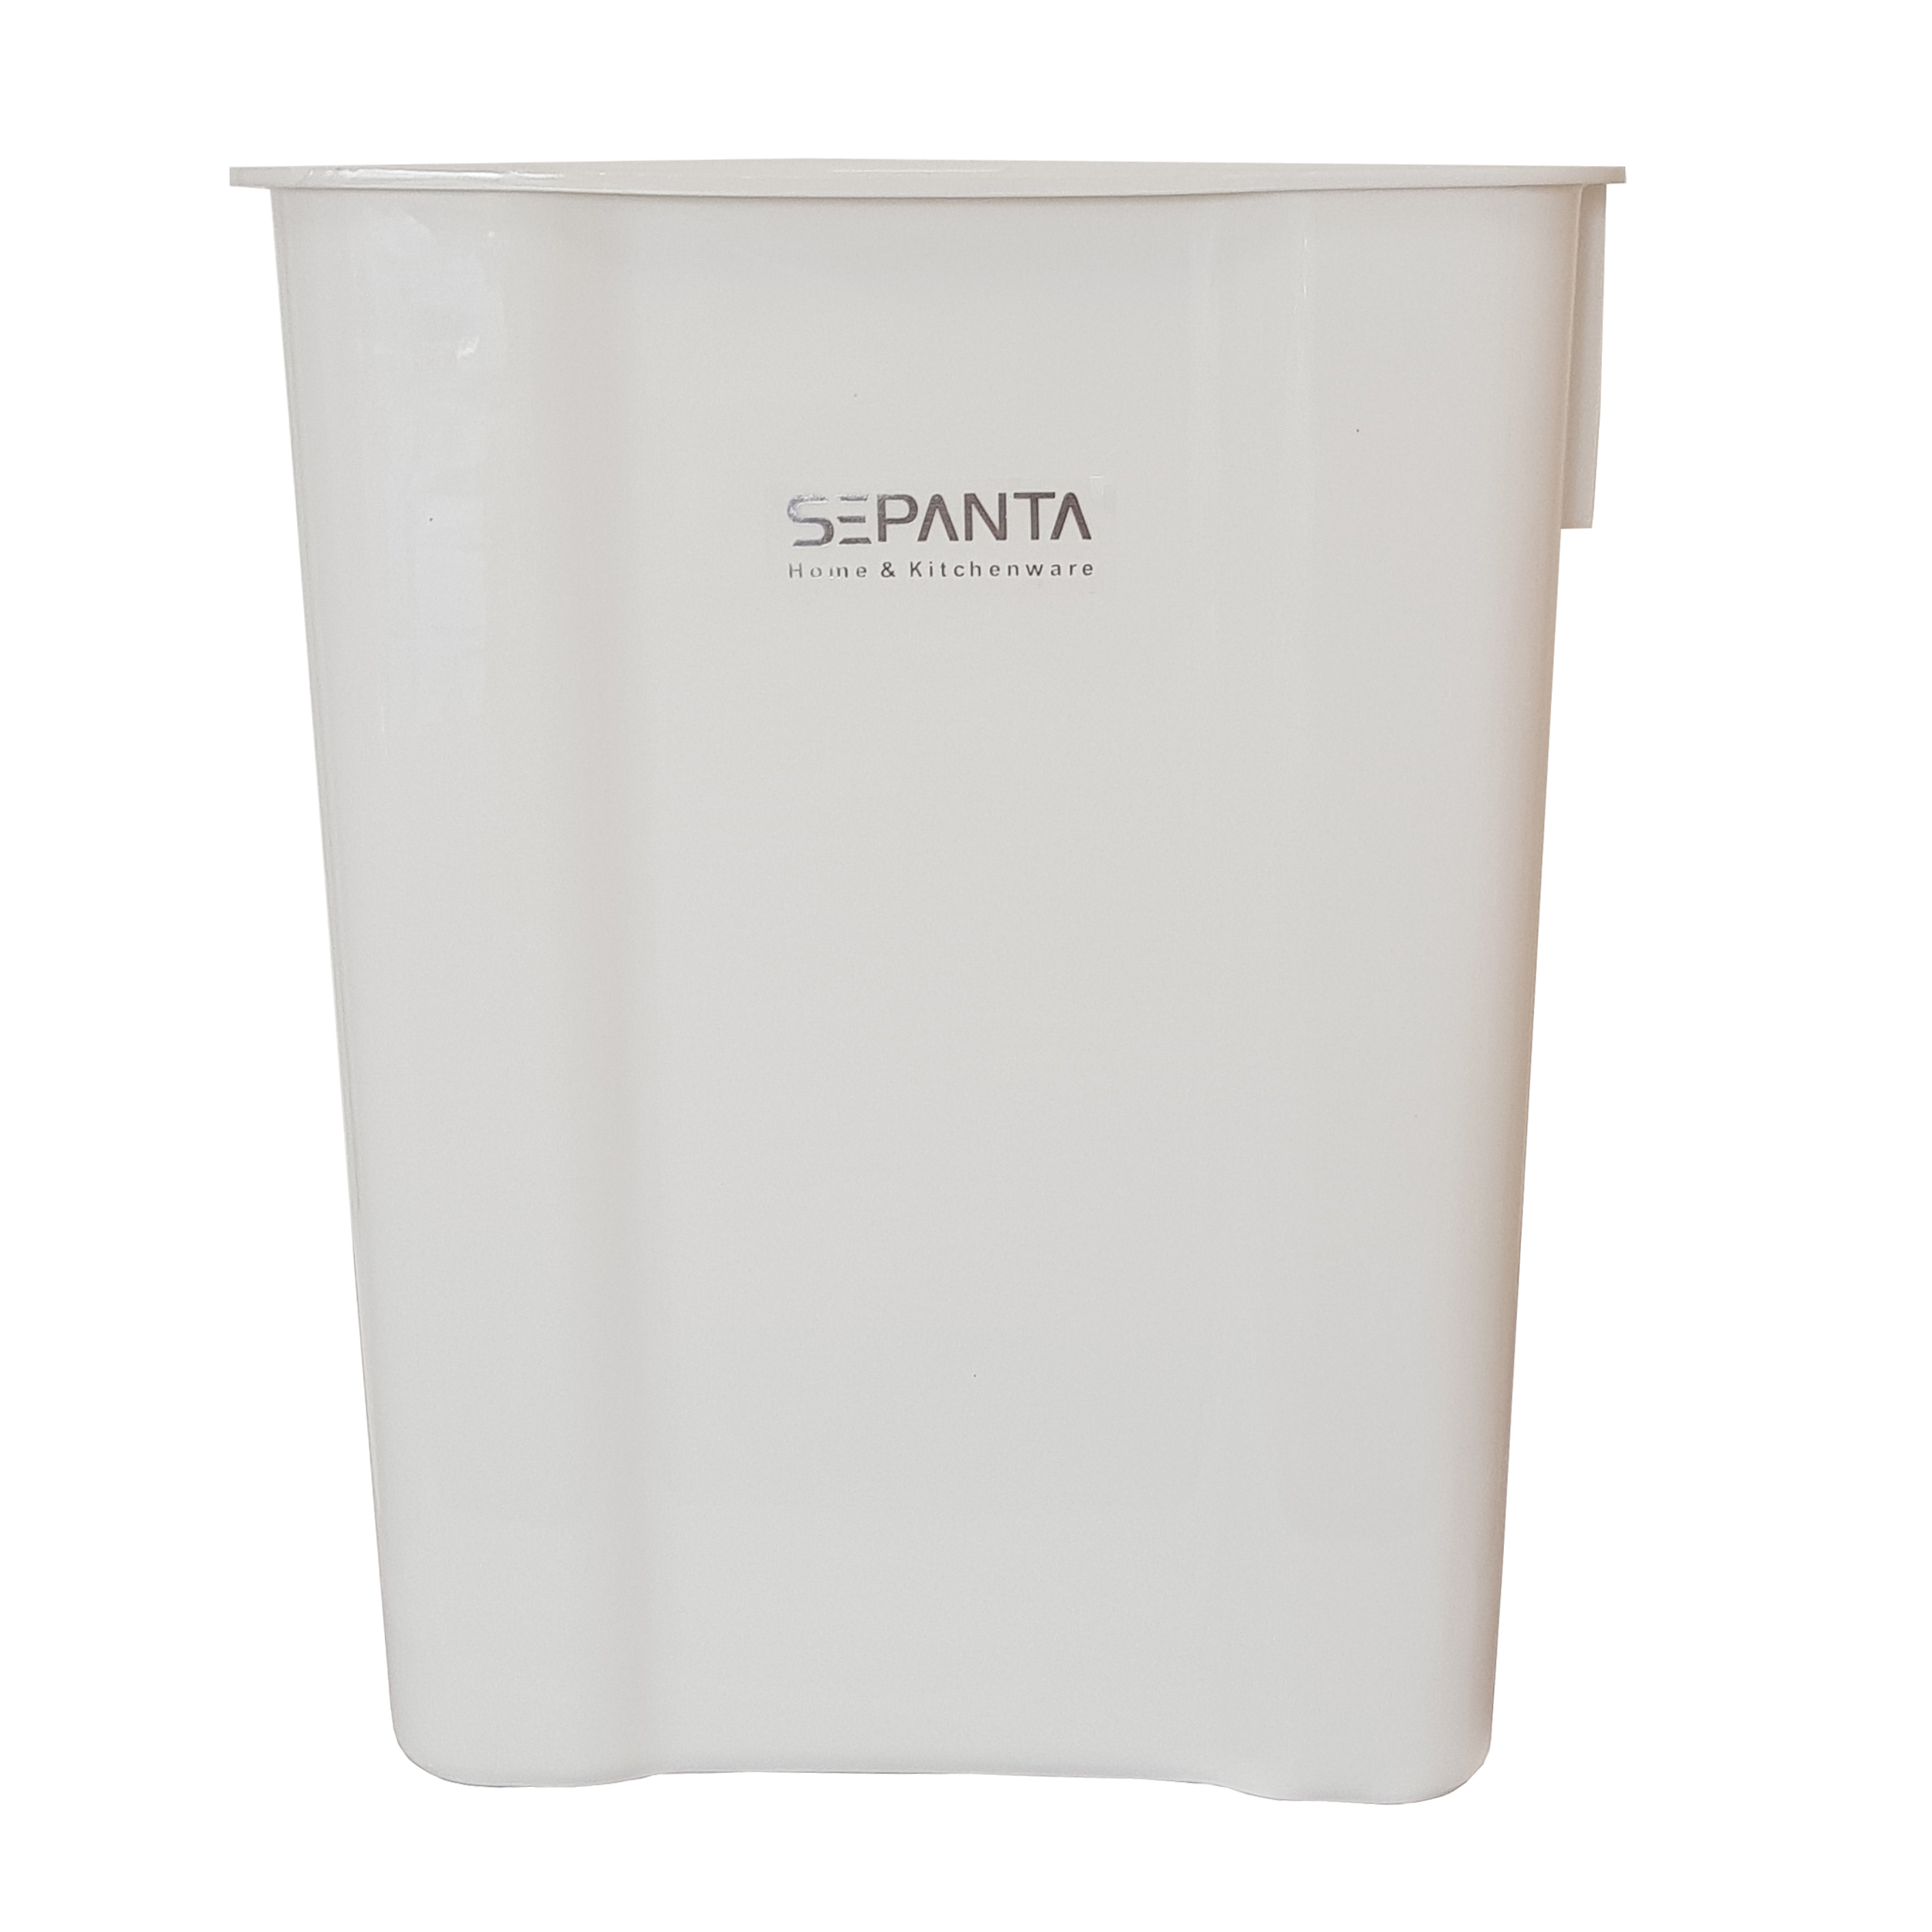 سطل زباله کابینتی سپنتا کد 2020 گنجایش 4.5 لیتر